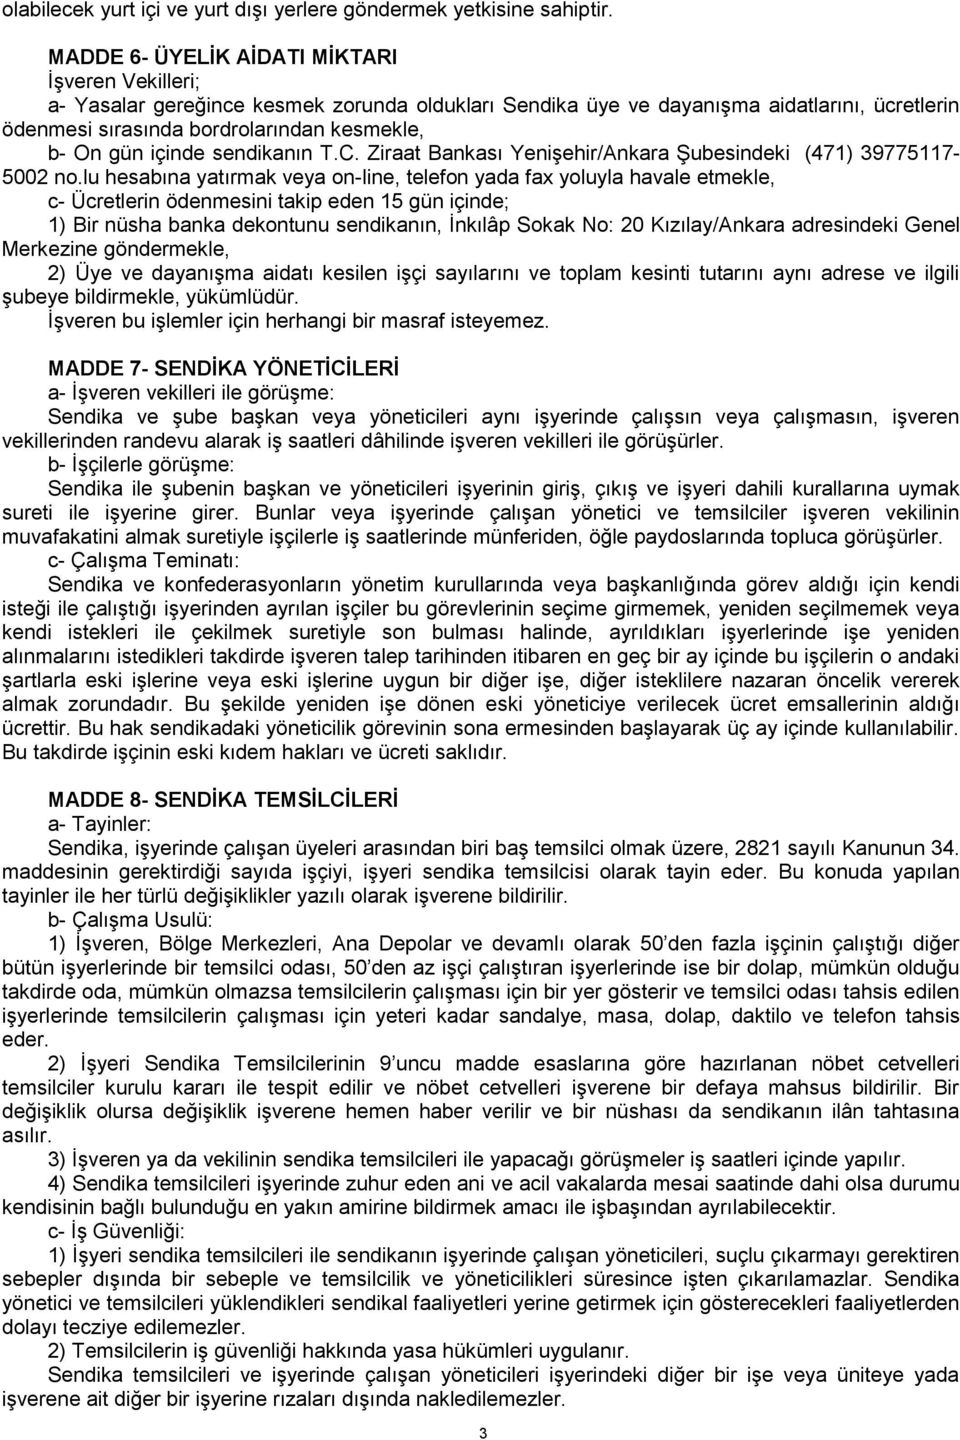 içinde sendikanın T.C. Ziraat Bankası Yenişehir/Ankara Şubesindeki (471) 39775117-5002 no.